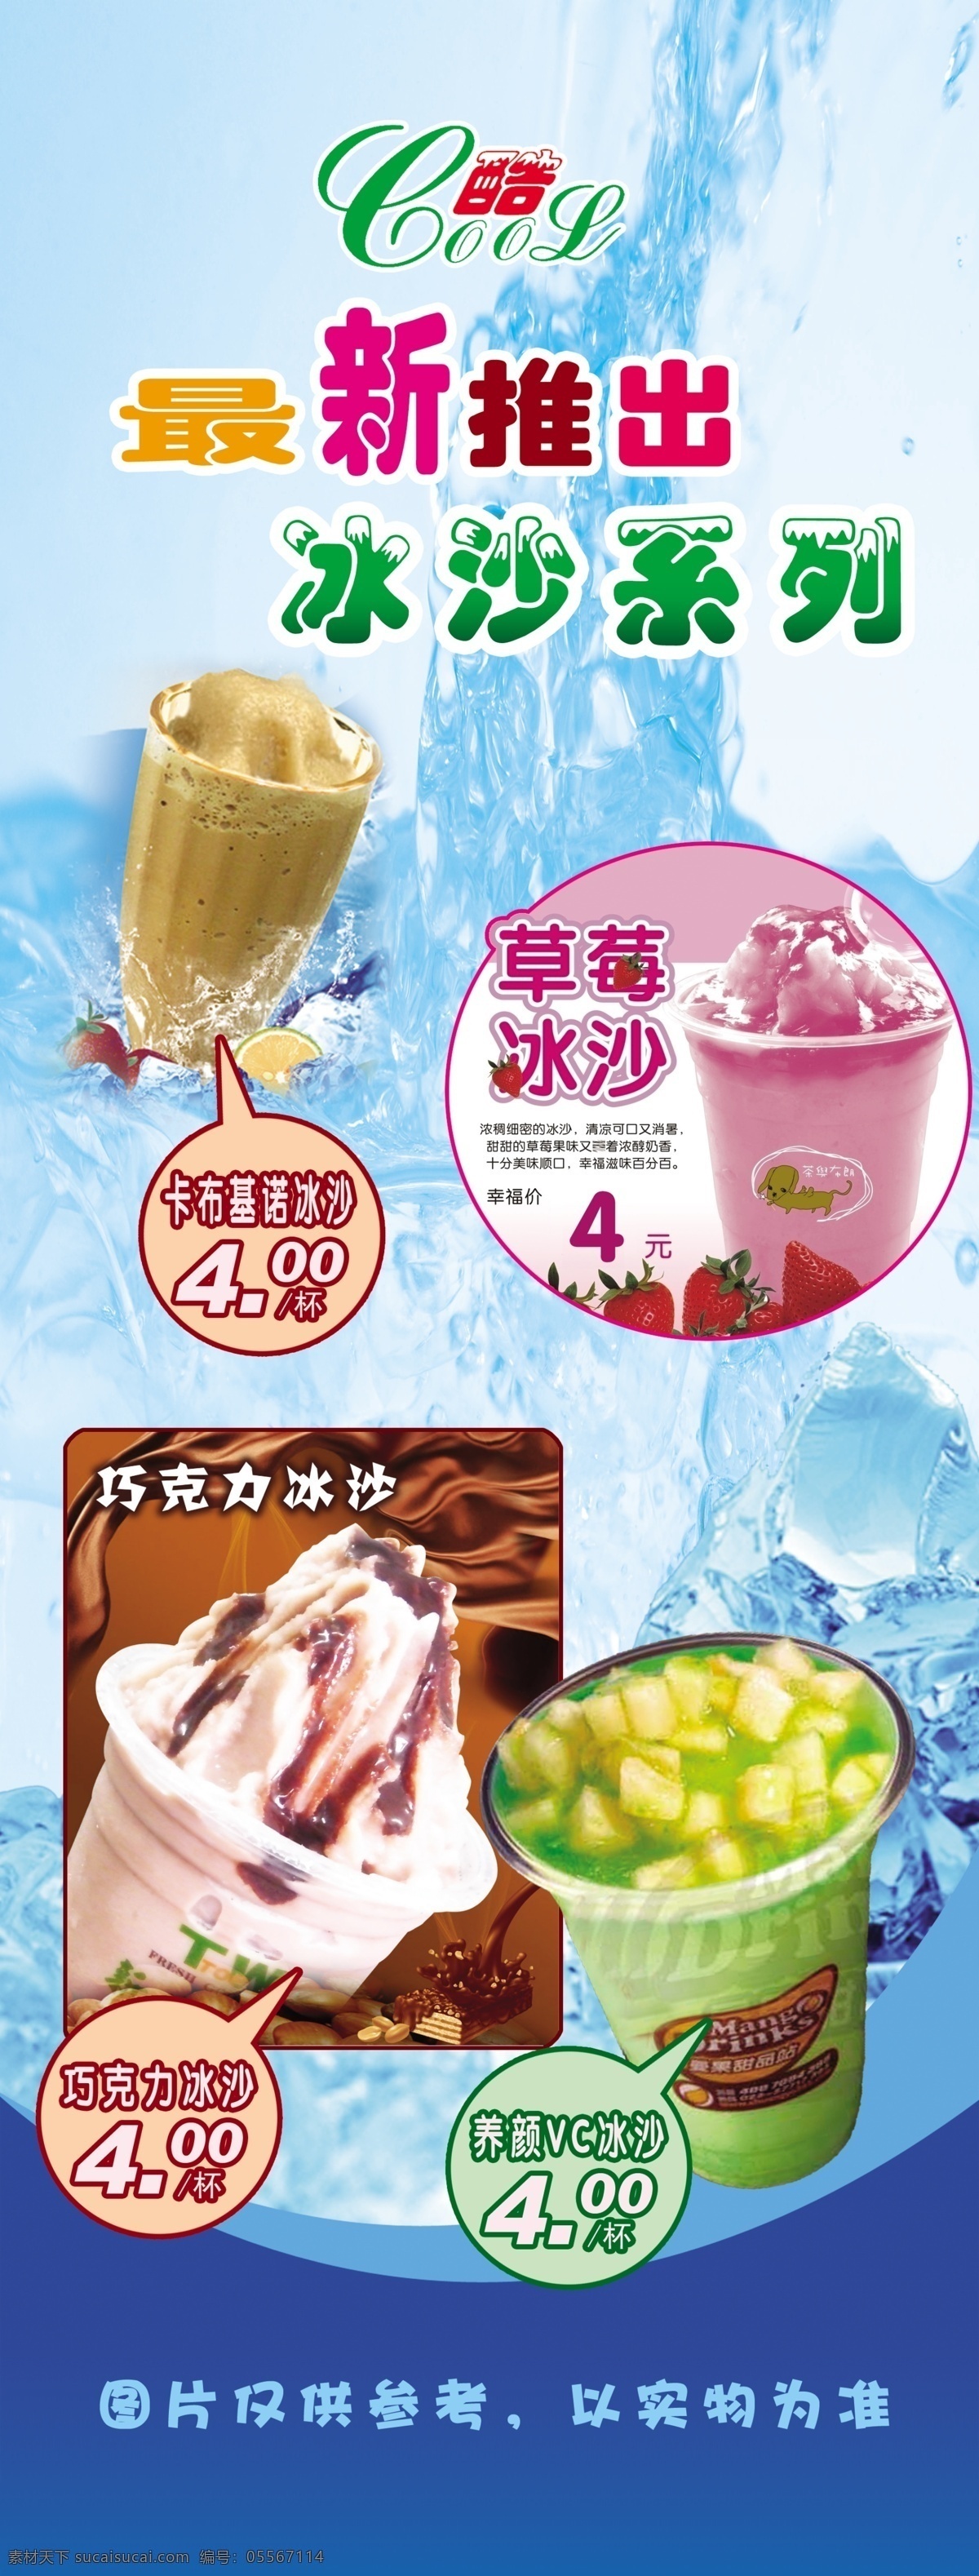 奶茶店海报 酷 最新推出 冰沙 草莓冰沙 卡布基诺冰沙 巧克力冰沙 vc冰沙 奶茶背景 蓝色背景 广告设计模板 源文件